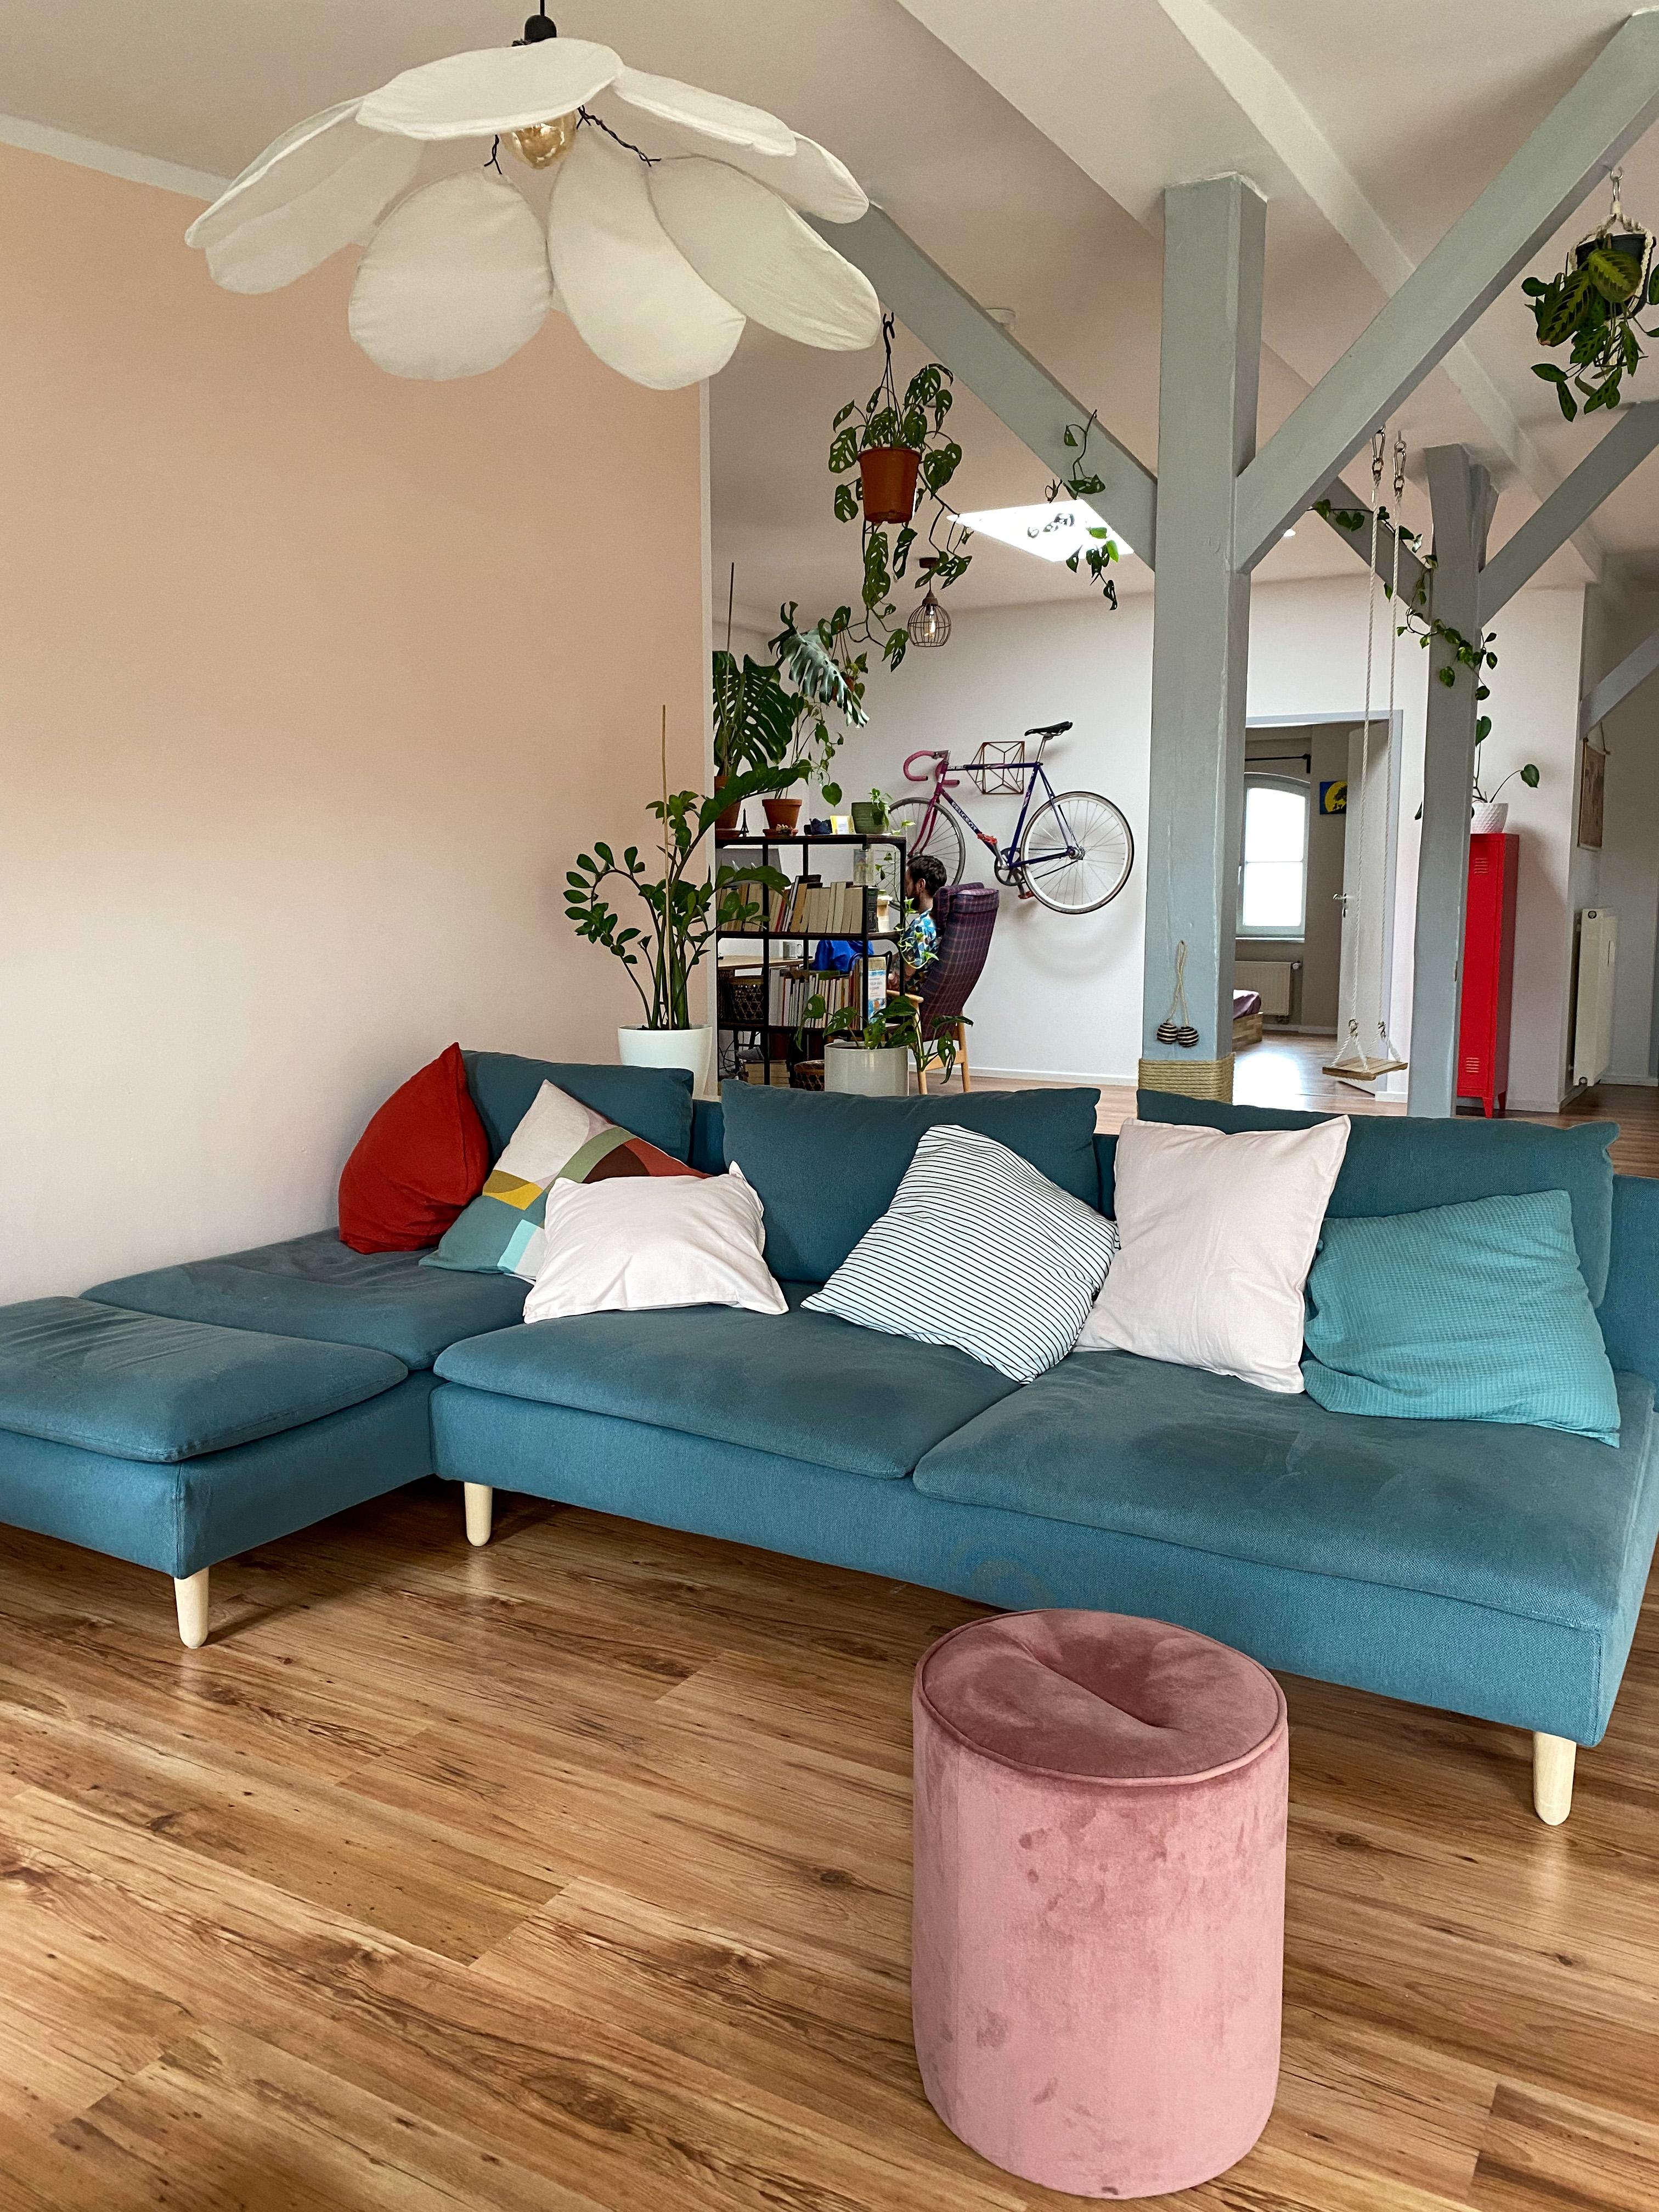 Das Sofa wurde am Wochenende nochmal neu positioniert und ich mag den Blick total.
#sofa #wohnzimmer #farbenfroh